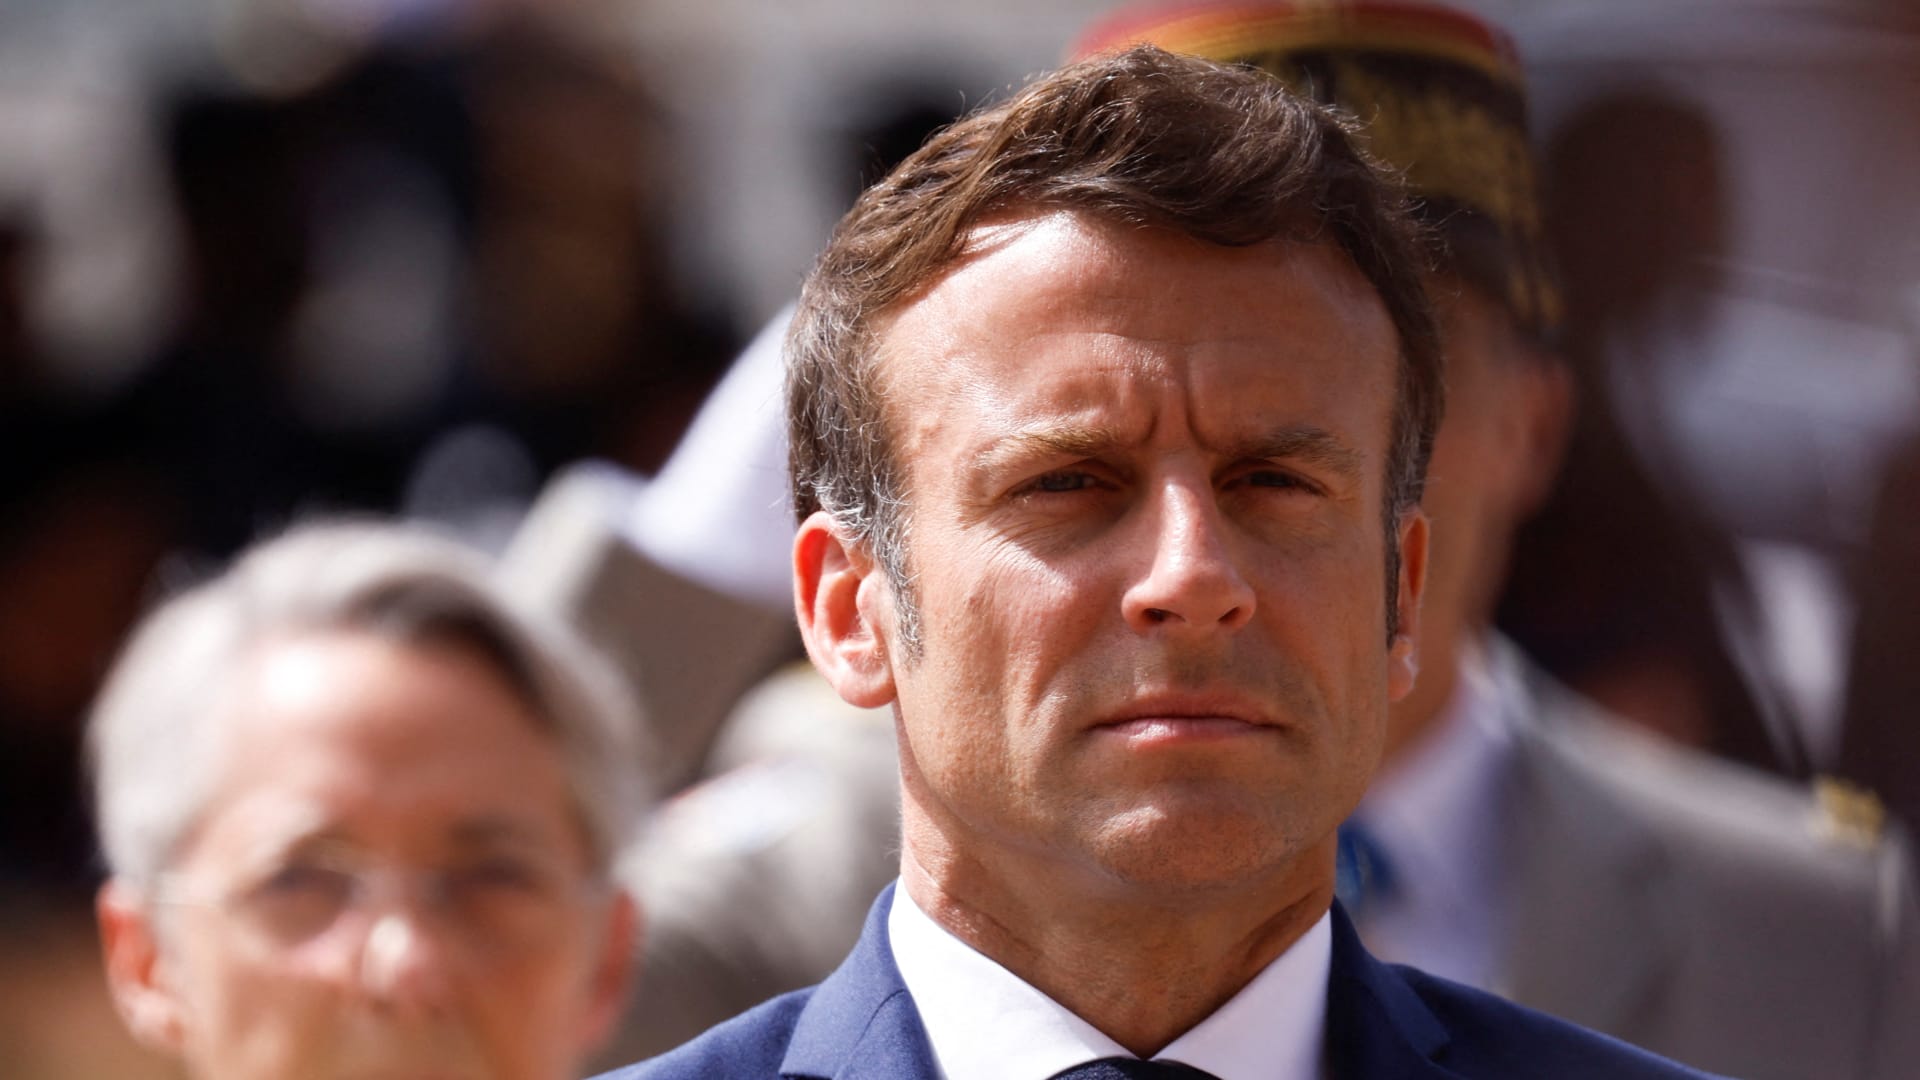 تحالف ماكرون يفشل في حجز الأغلبية المطلقة في الانتخابات الفرنسية التشريعية